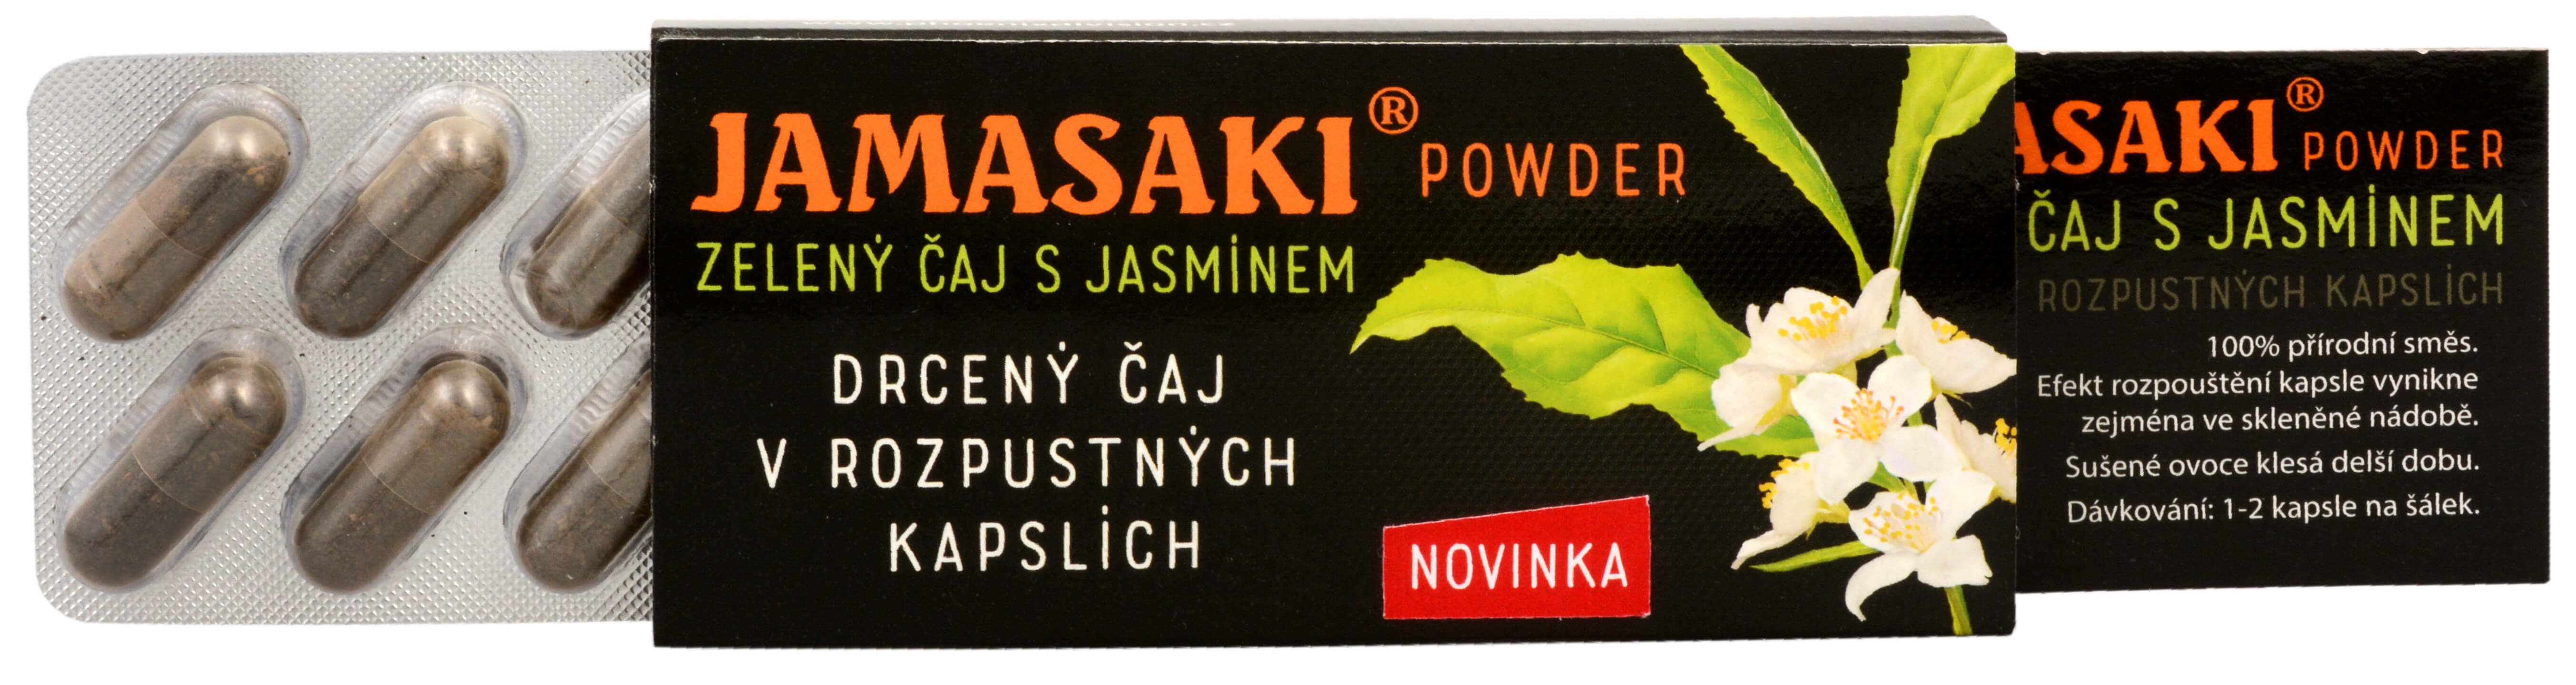 Hannasaki Jamasaki powder - zelený jasmínový a červený čaj - cestovní balení 10 x 1 g